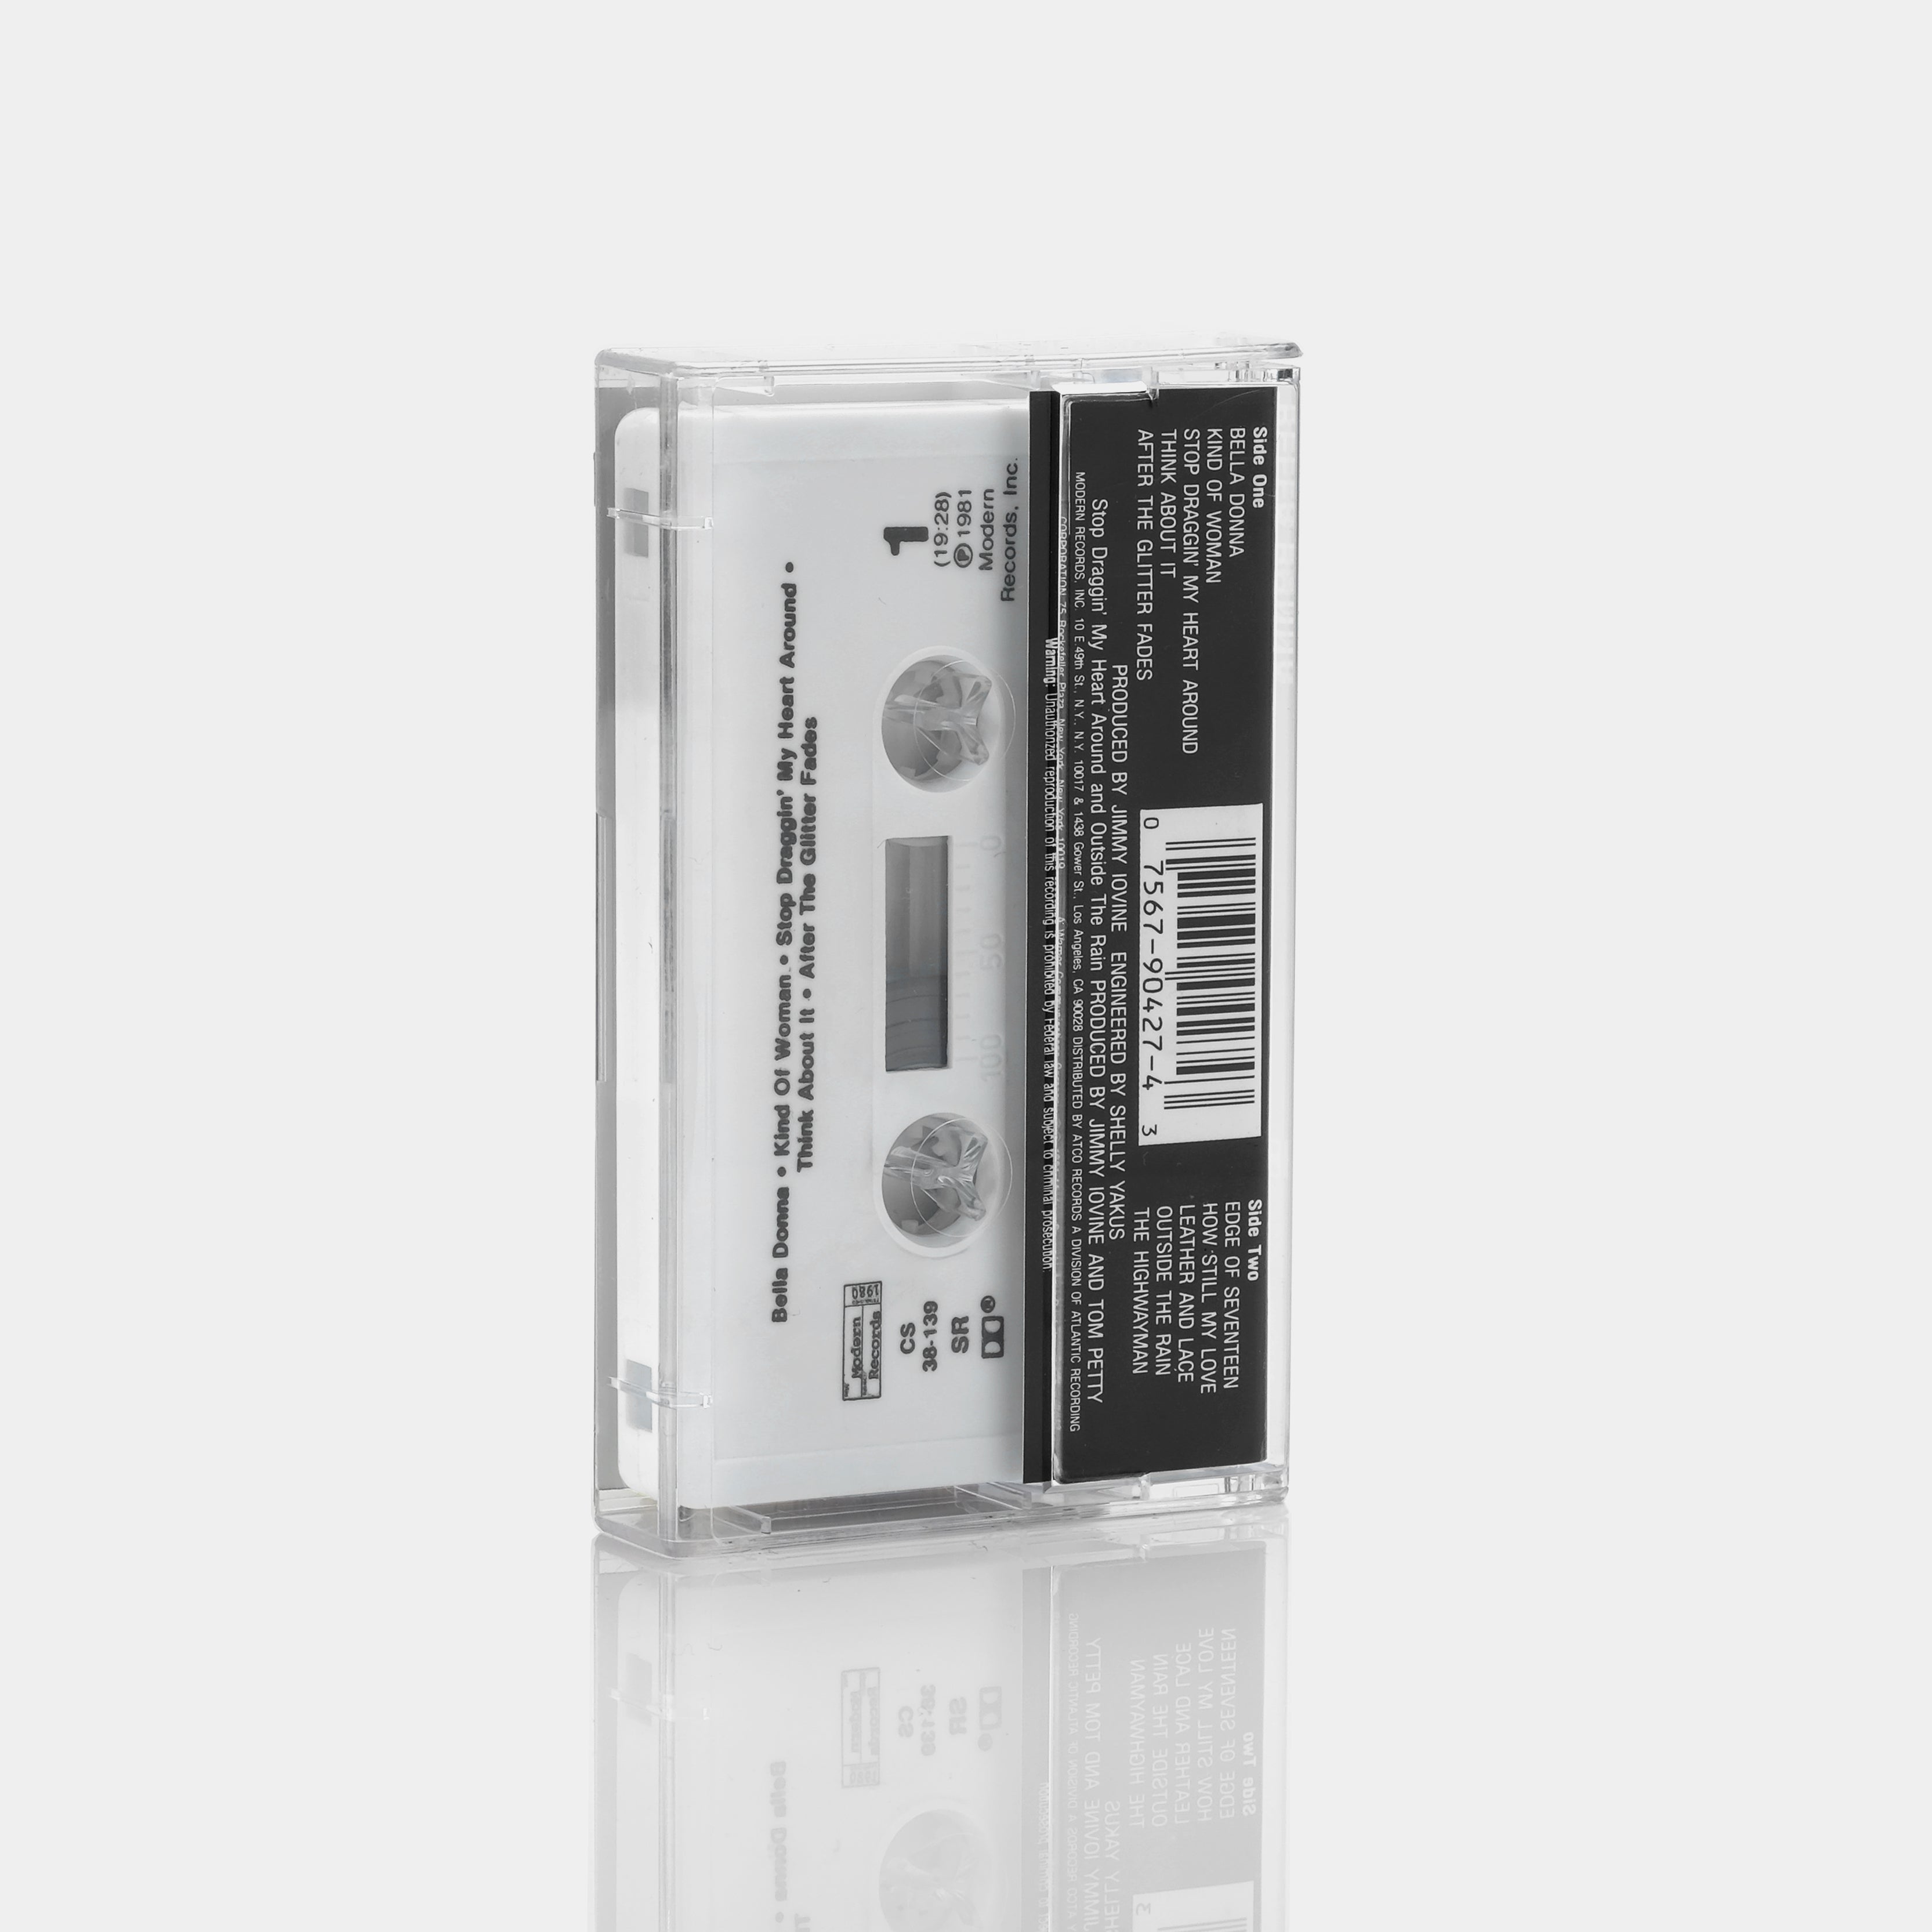 Stevie Nicks - Bella Donna Cassette Tape